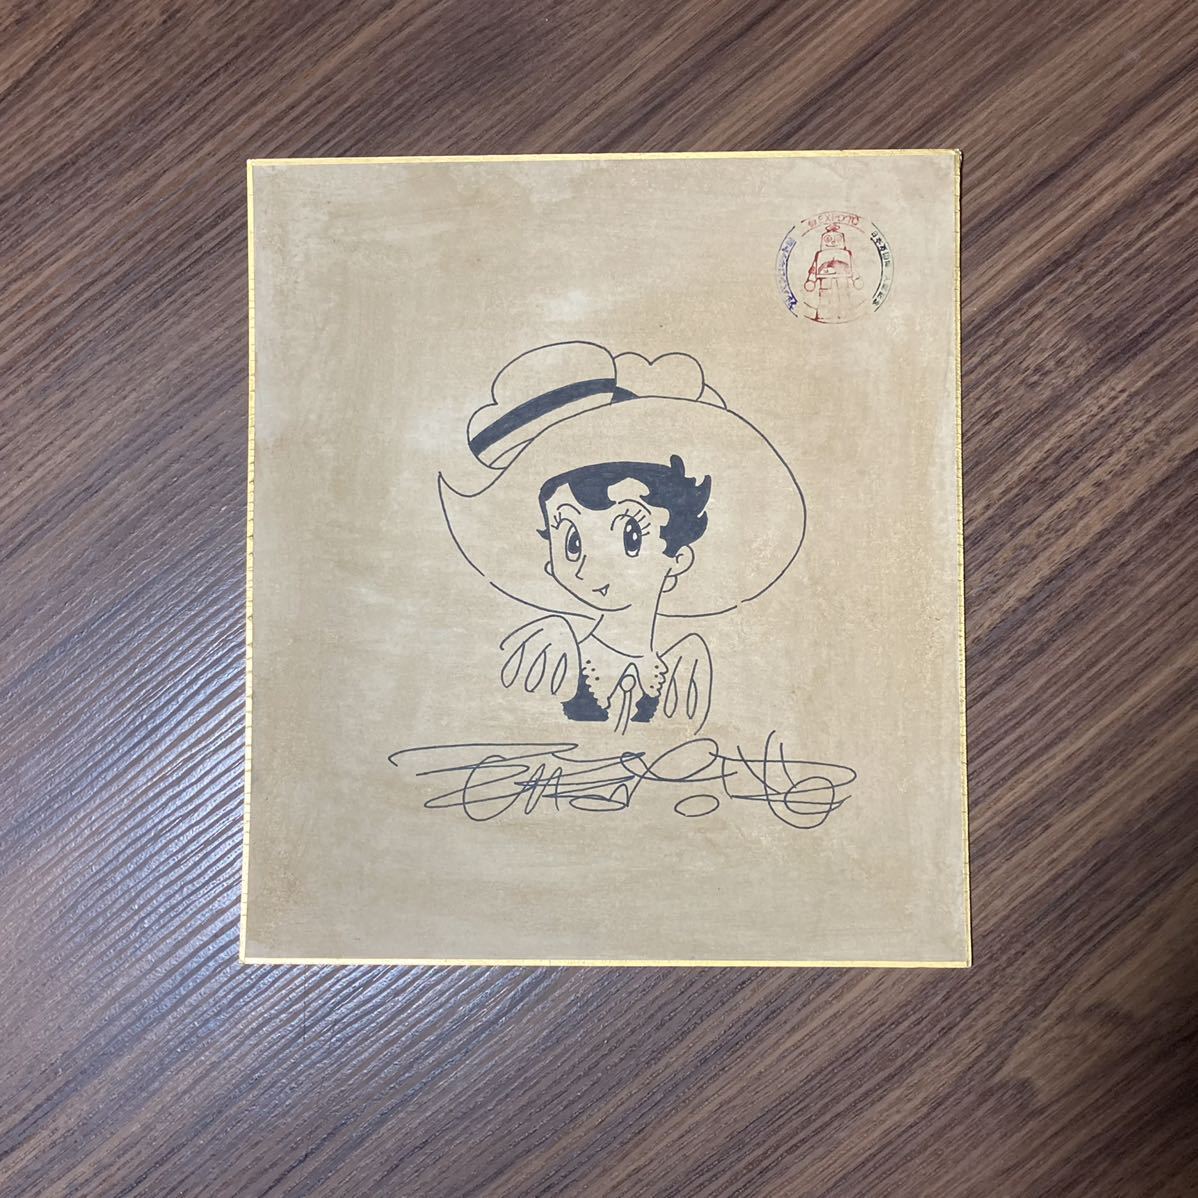  рука .. насекомое автограф автограф Jungle Emperor Ribon no Kishi Osaka десять тысяч .( collector сброшенный товар ) [ автограф автограф пожелтение иметь Fuji хлеб робот павильон ]